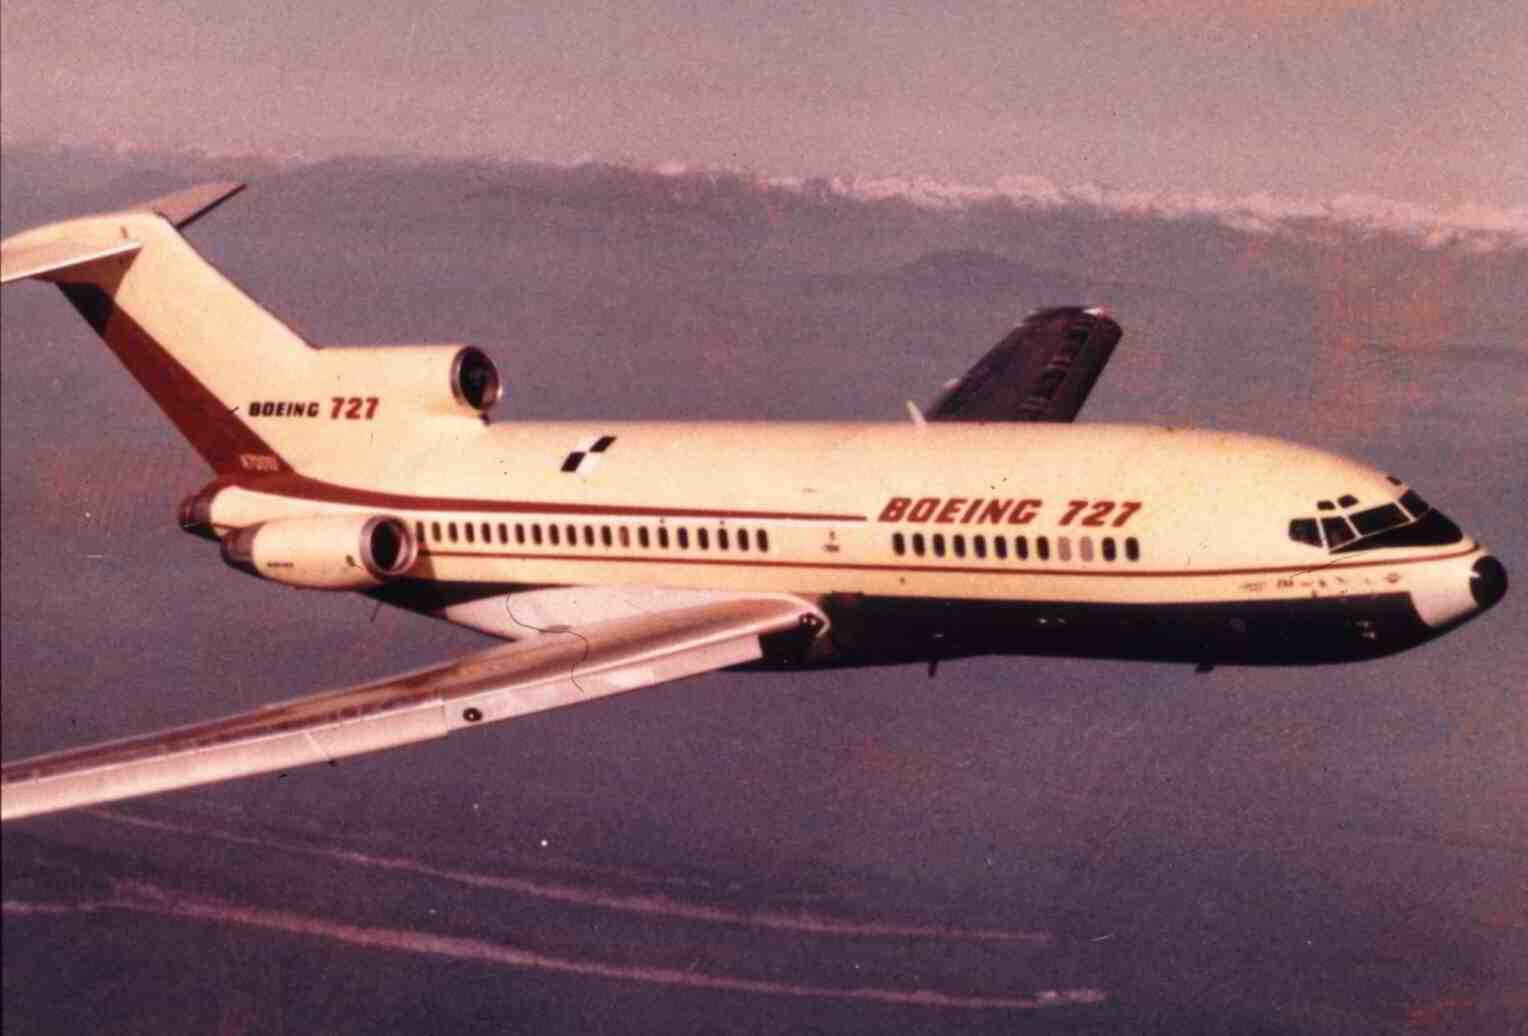 Boeing 727-100 next